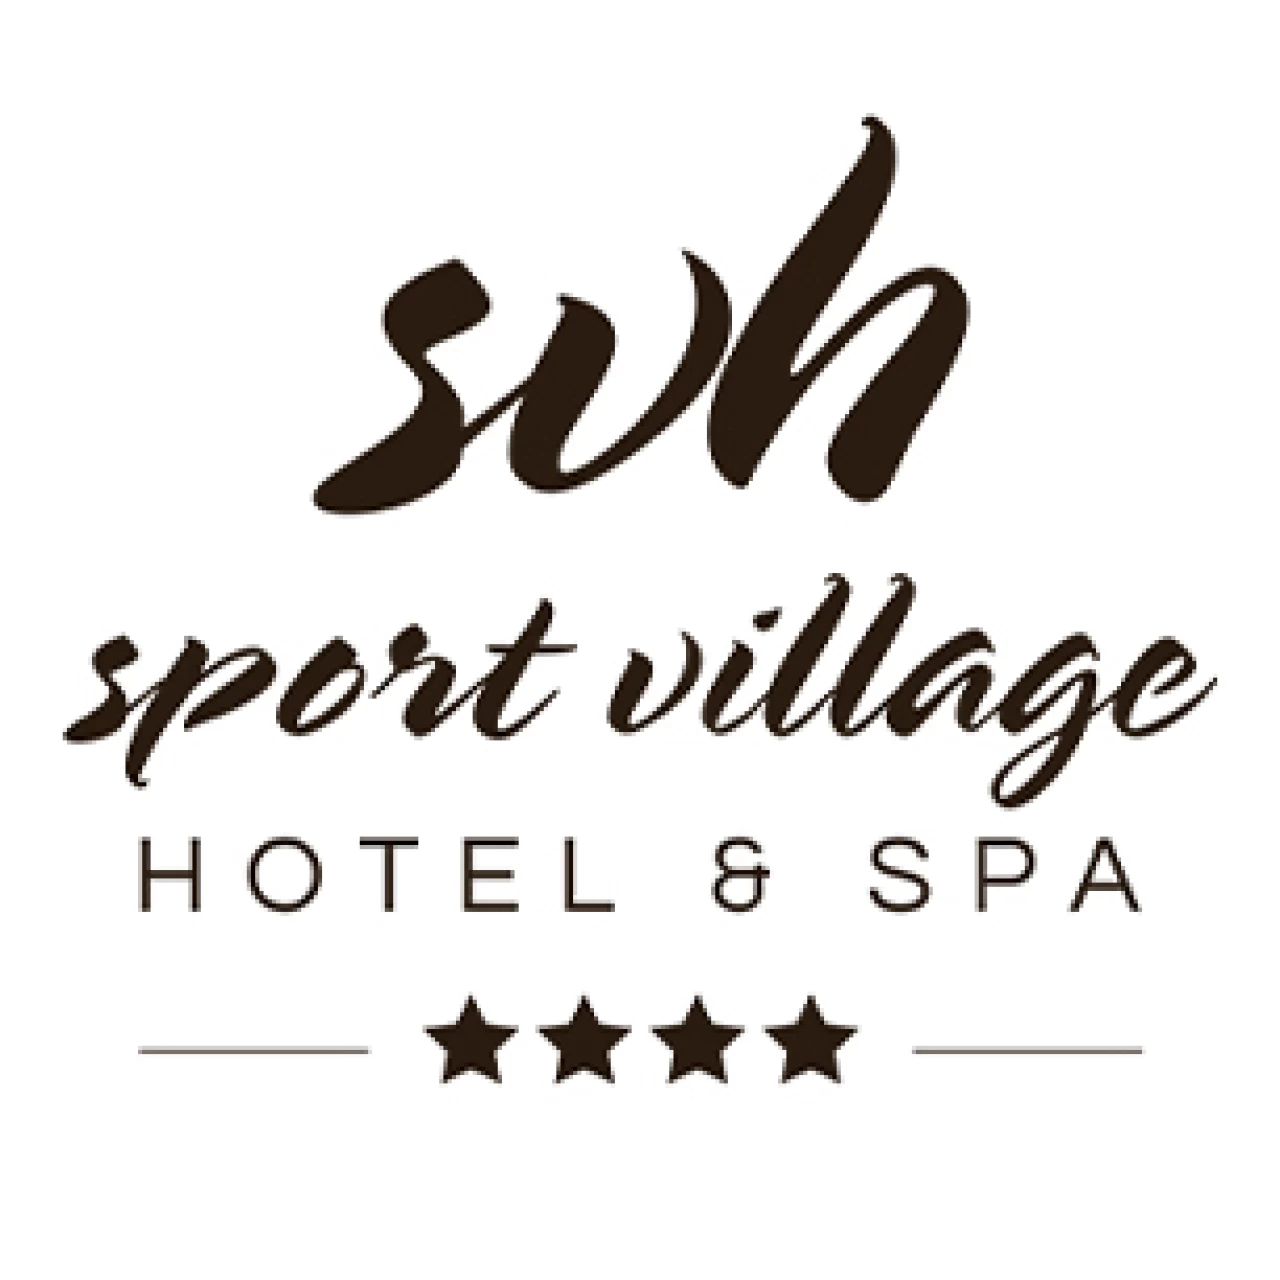 Banner Sport Village Hotel & Spa 306 per 306 pixel